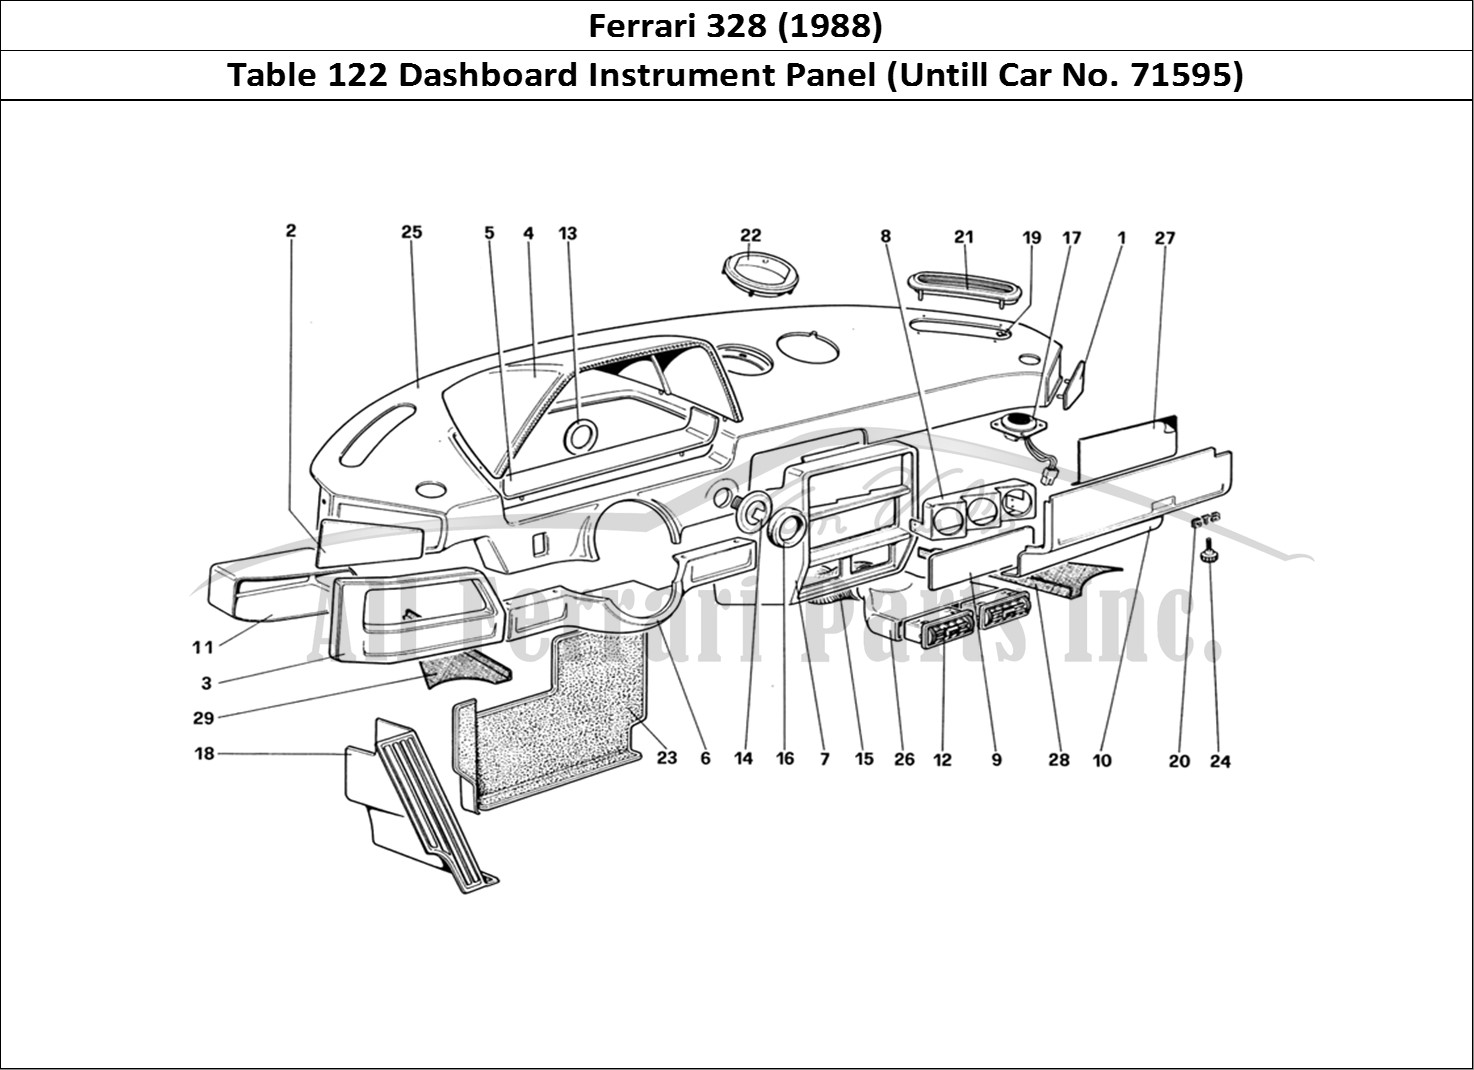 Ferrari Parts Ferrari 328 (1988) Page 122 Instruments Panel (Untill